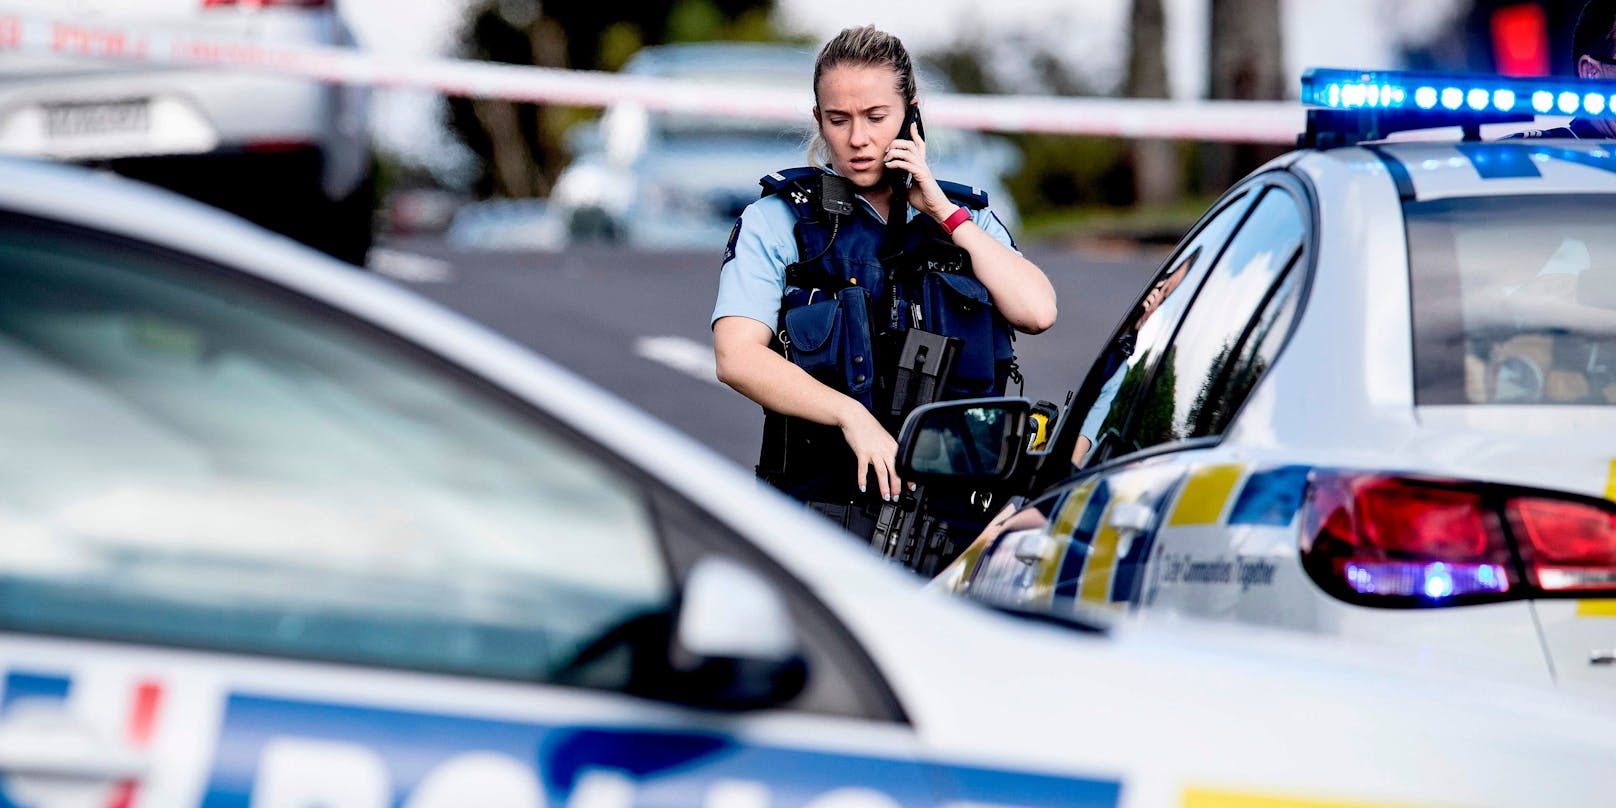 Der Angriff ereignete sich in einem Vorort von Auckland, Neuseeland.